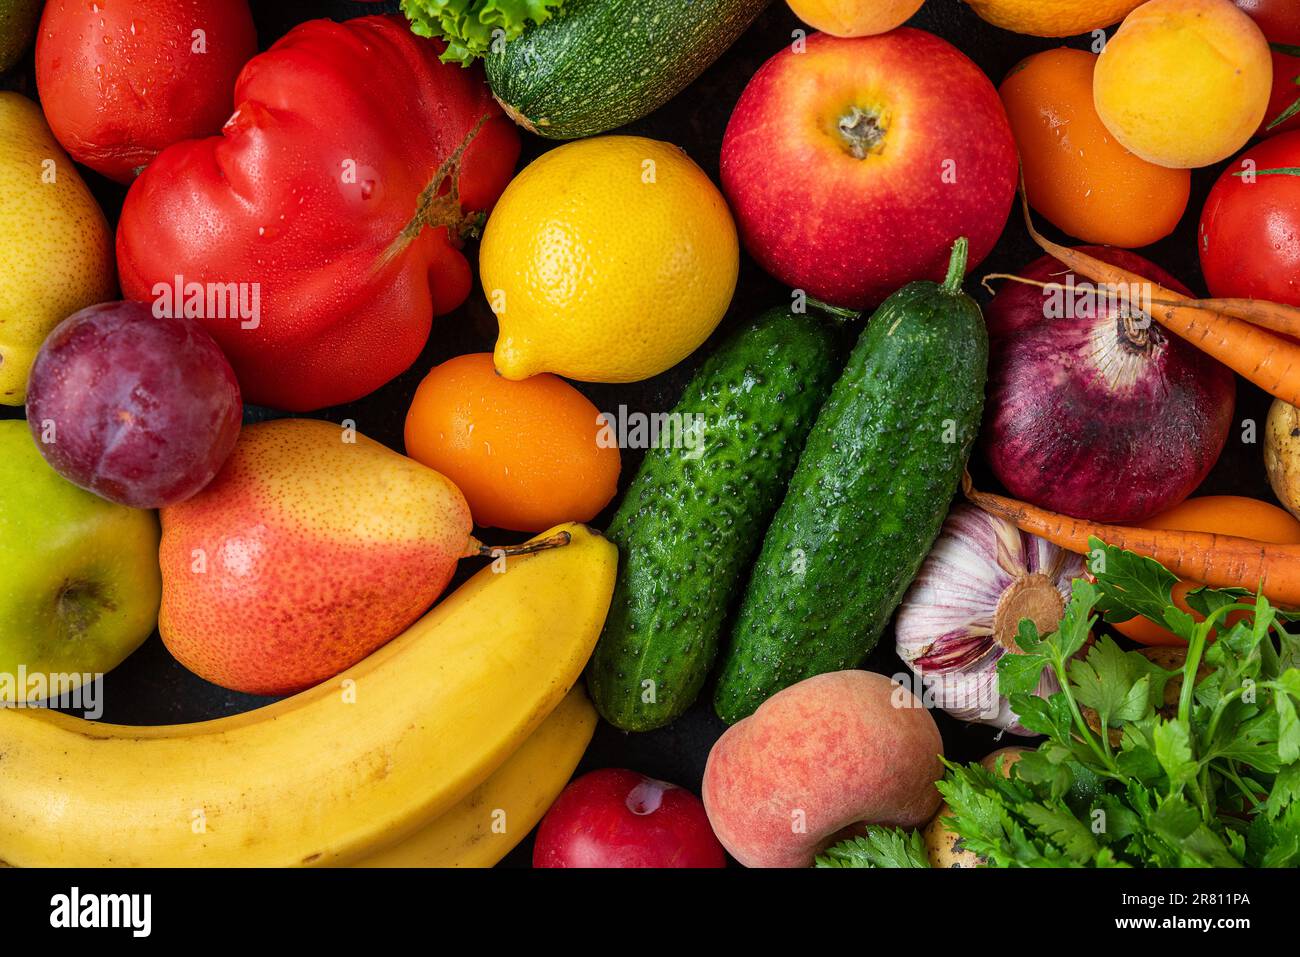 Assortiment de fruits et légumes frais biologiques du marché. Alimentation saine alimentation végétarienne. Vue de dessus Banque D'Images